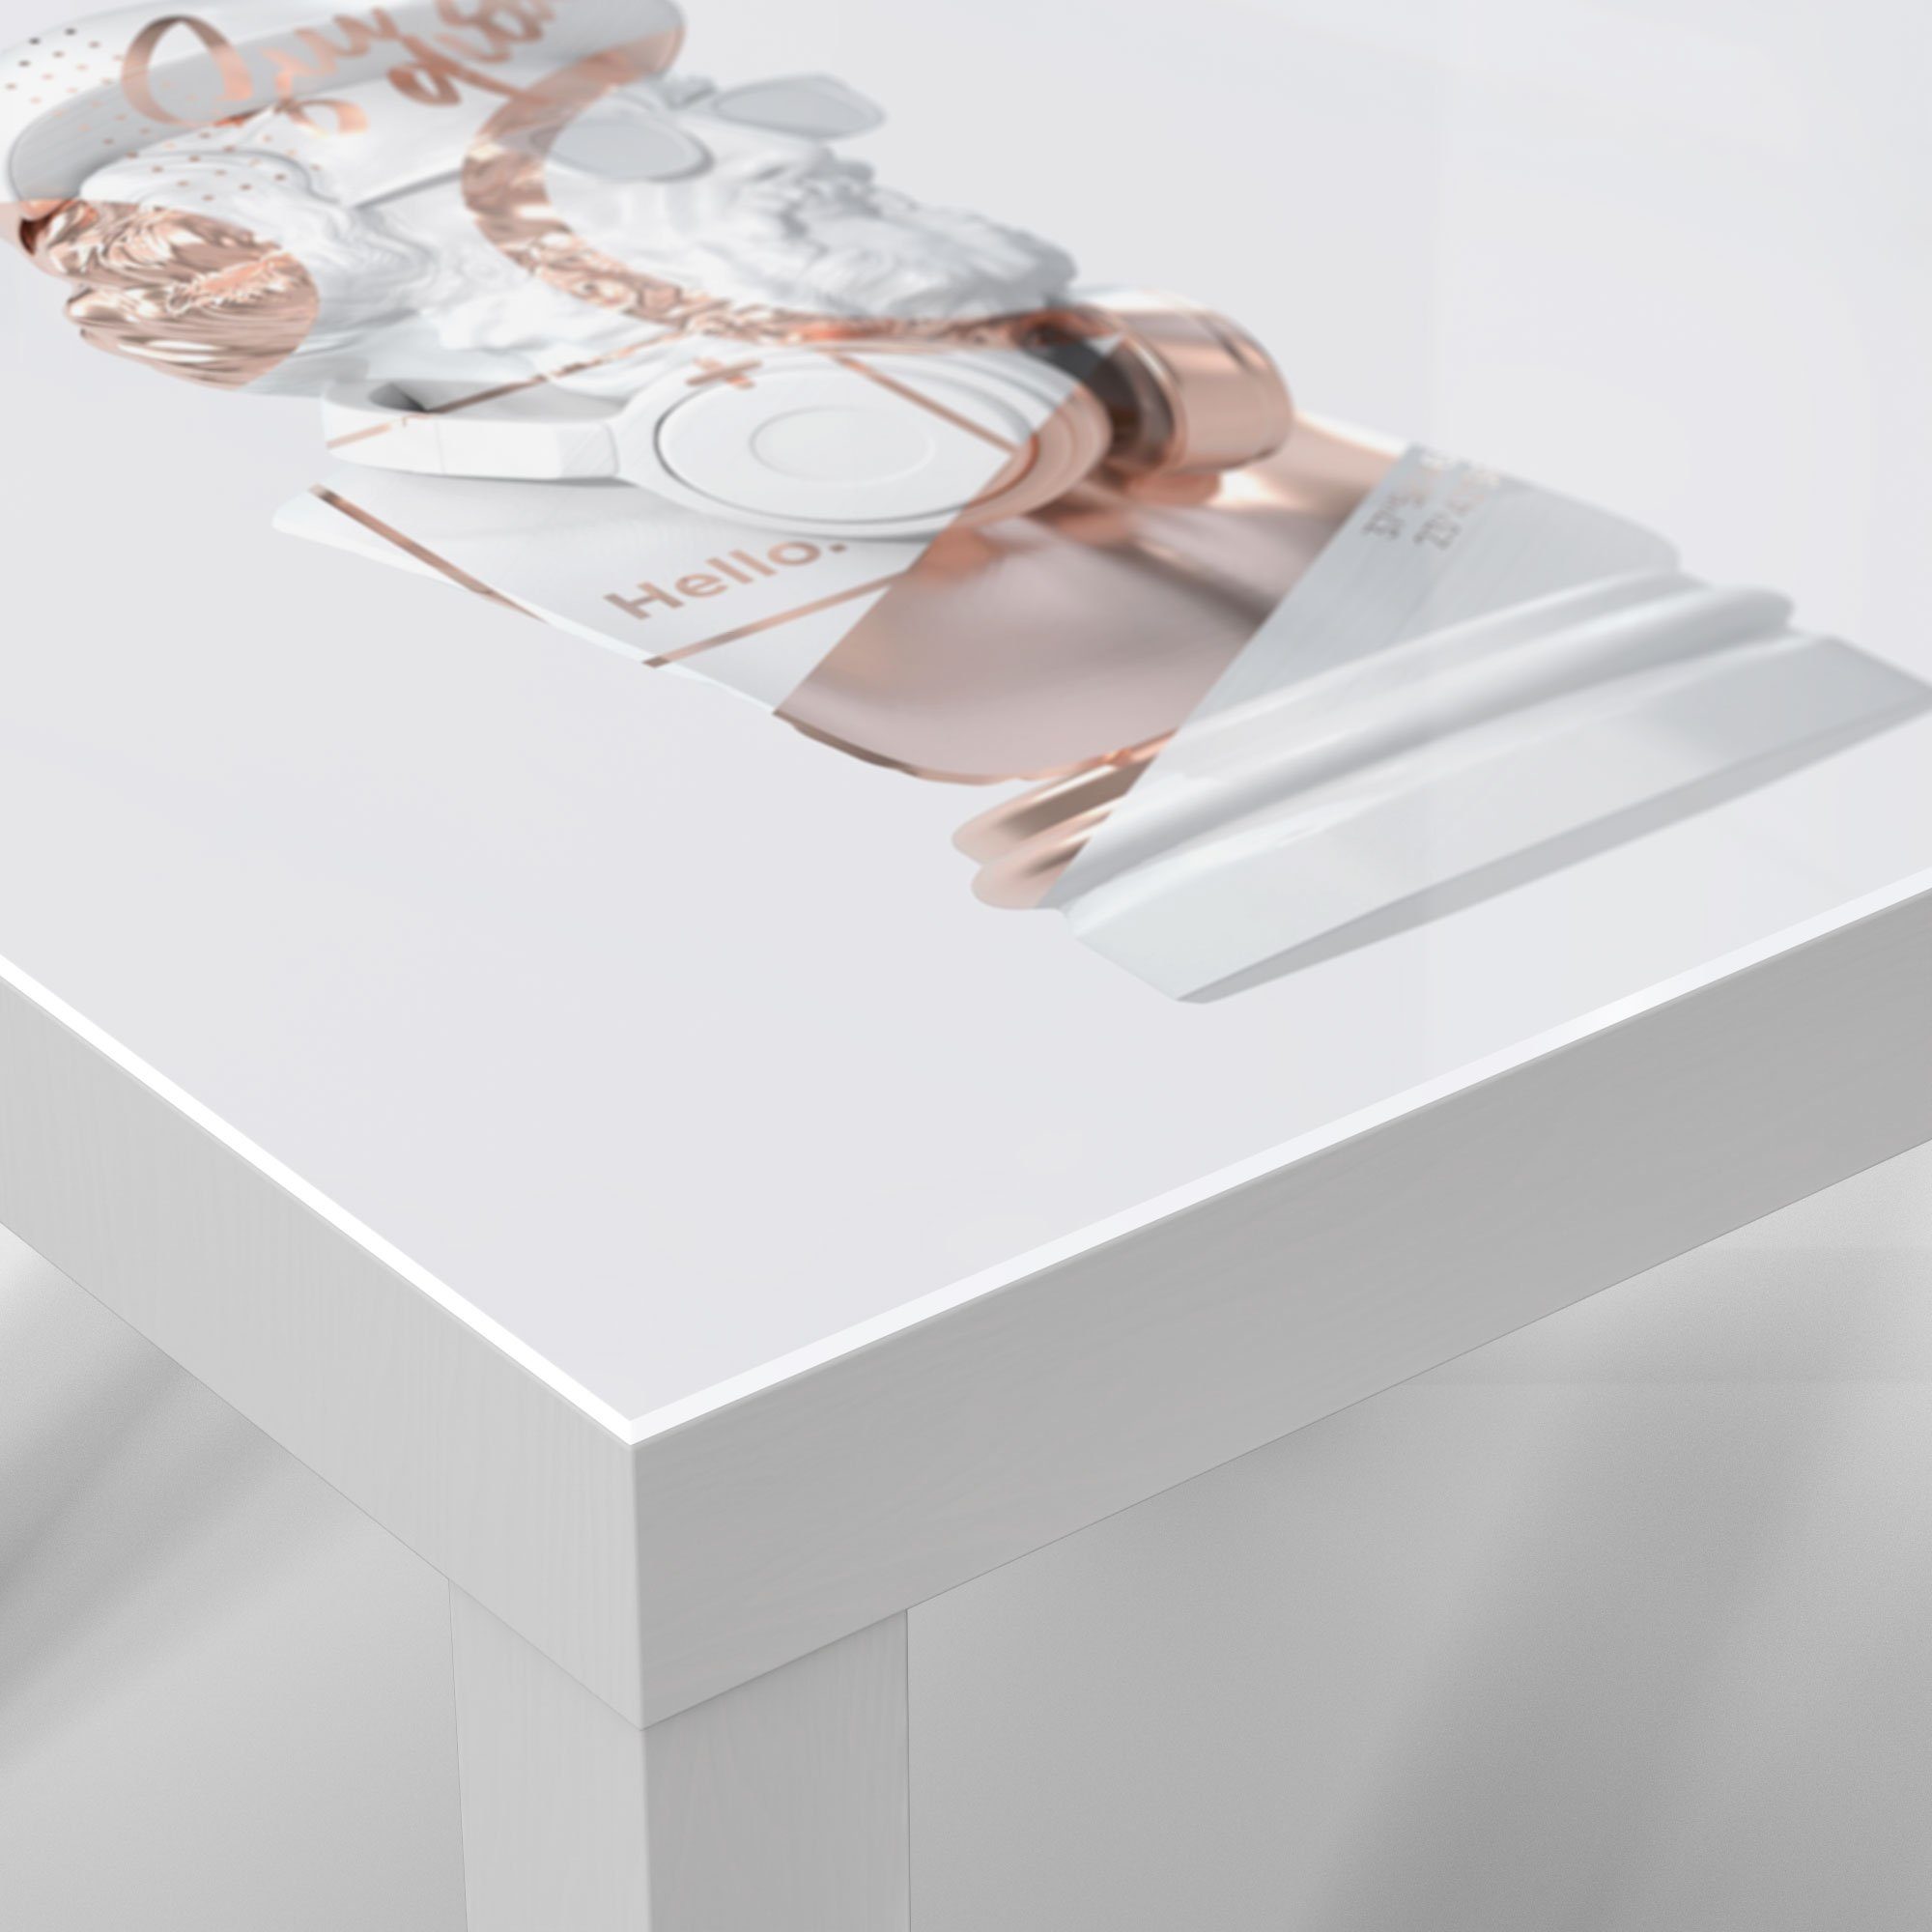 'Antike modern Couchtisch DEQORI Büste aufgepeppt', Glastisch Weiß Beistelltisch Glas